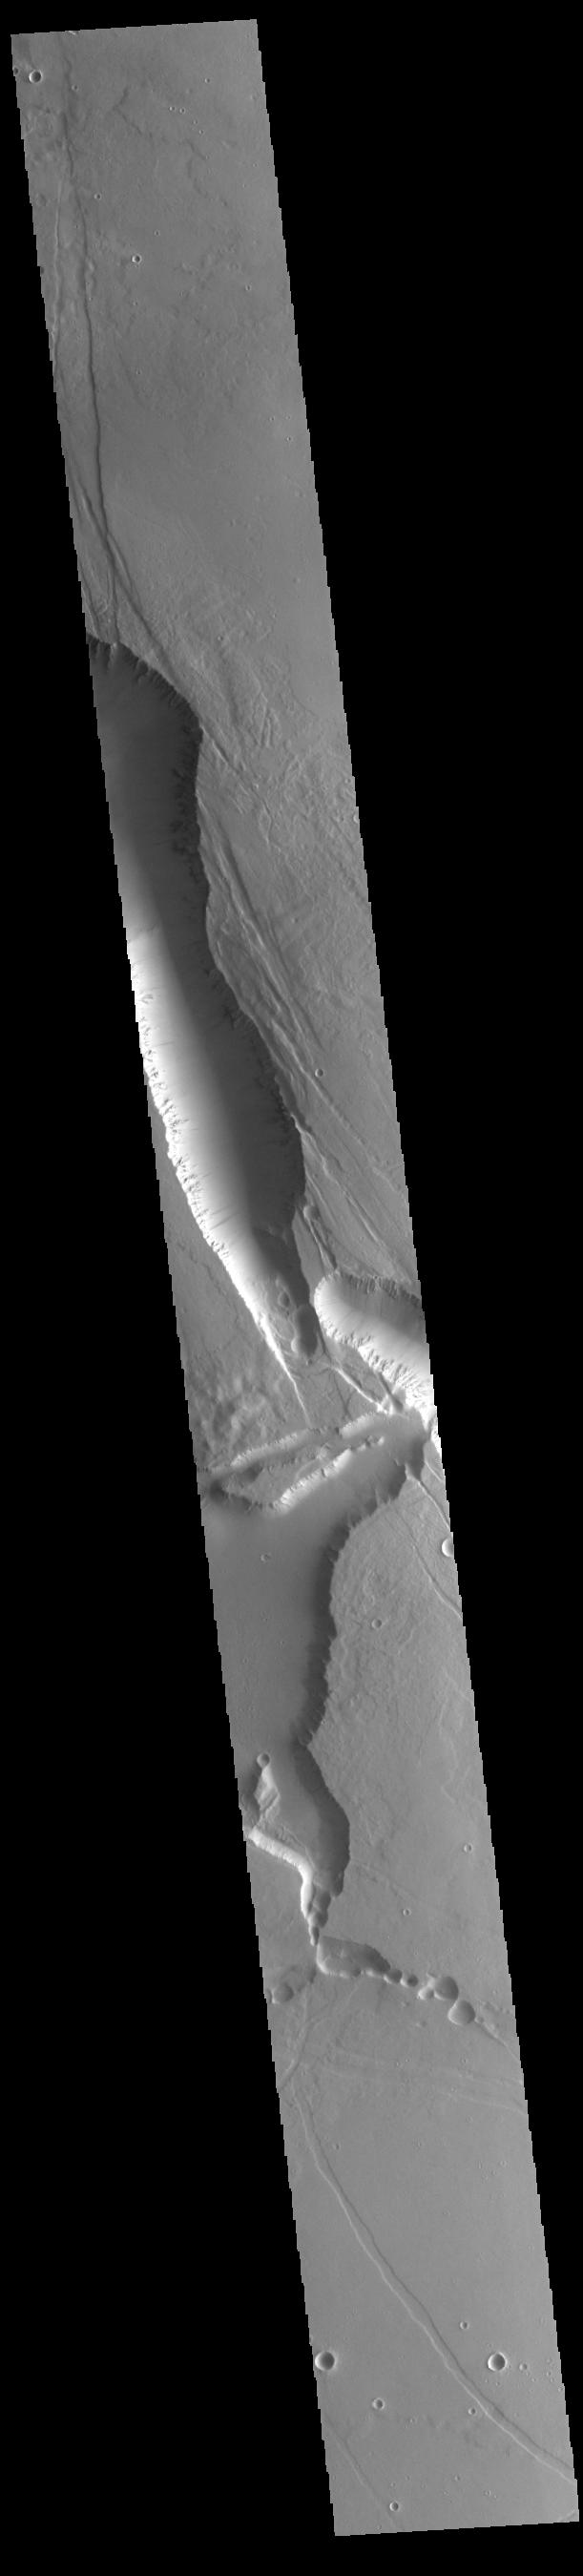 PIA24773: Elysium Chasma